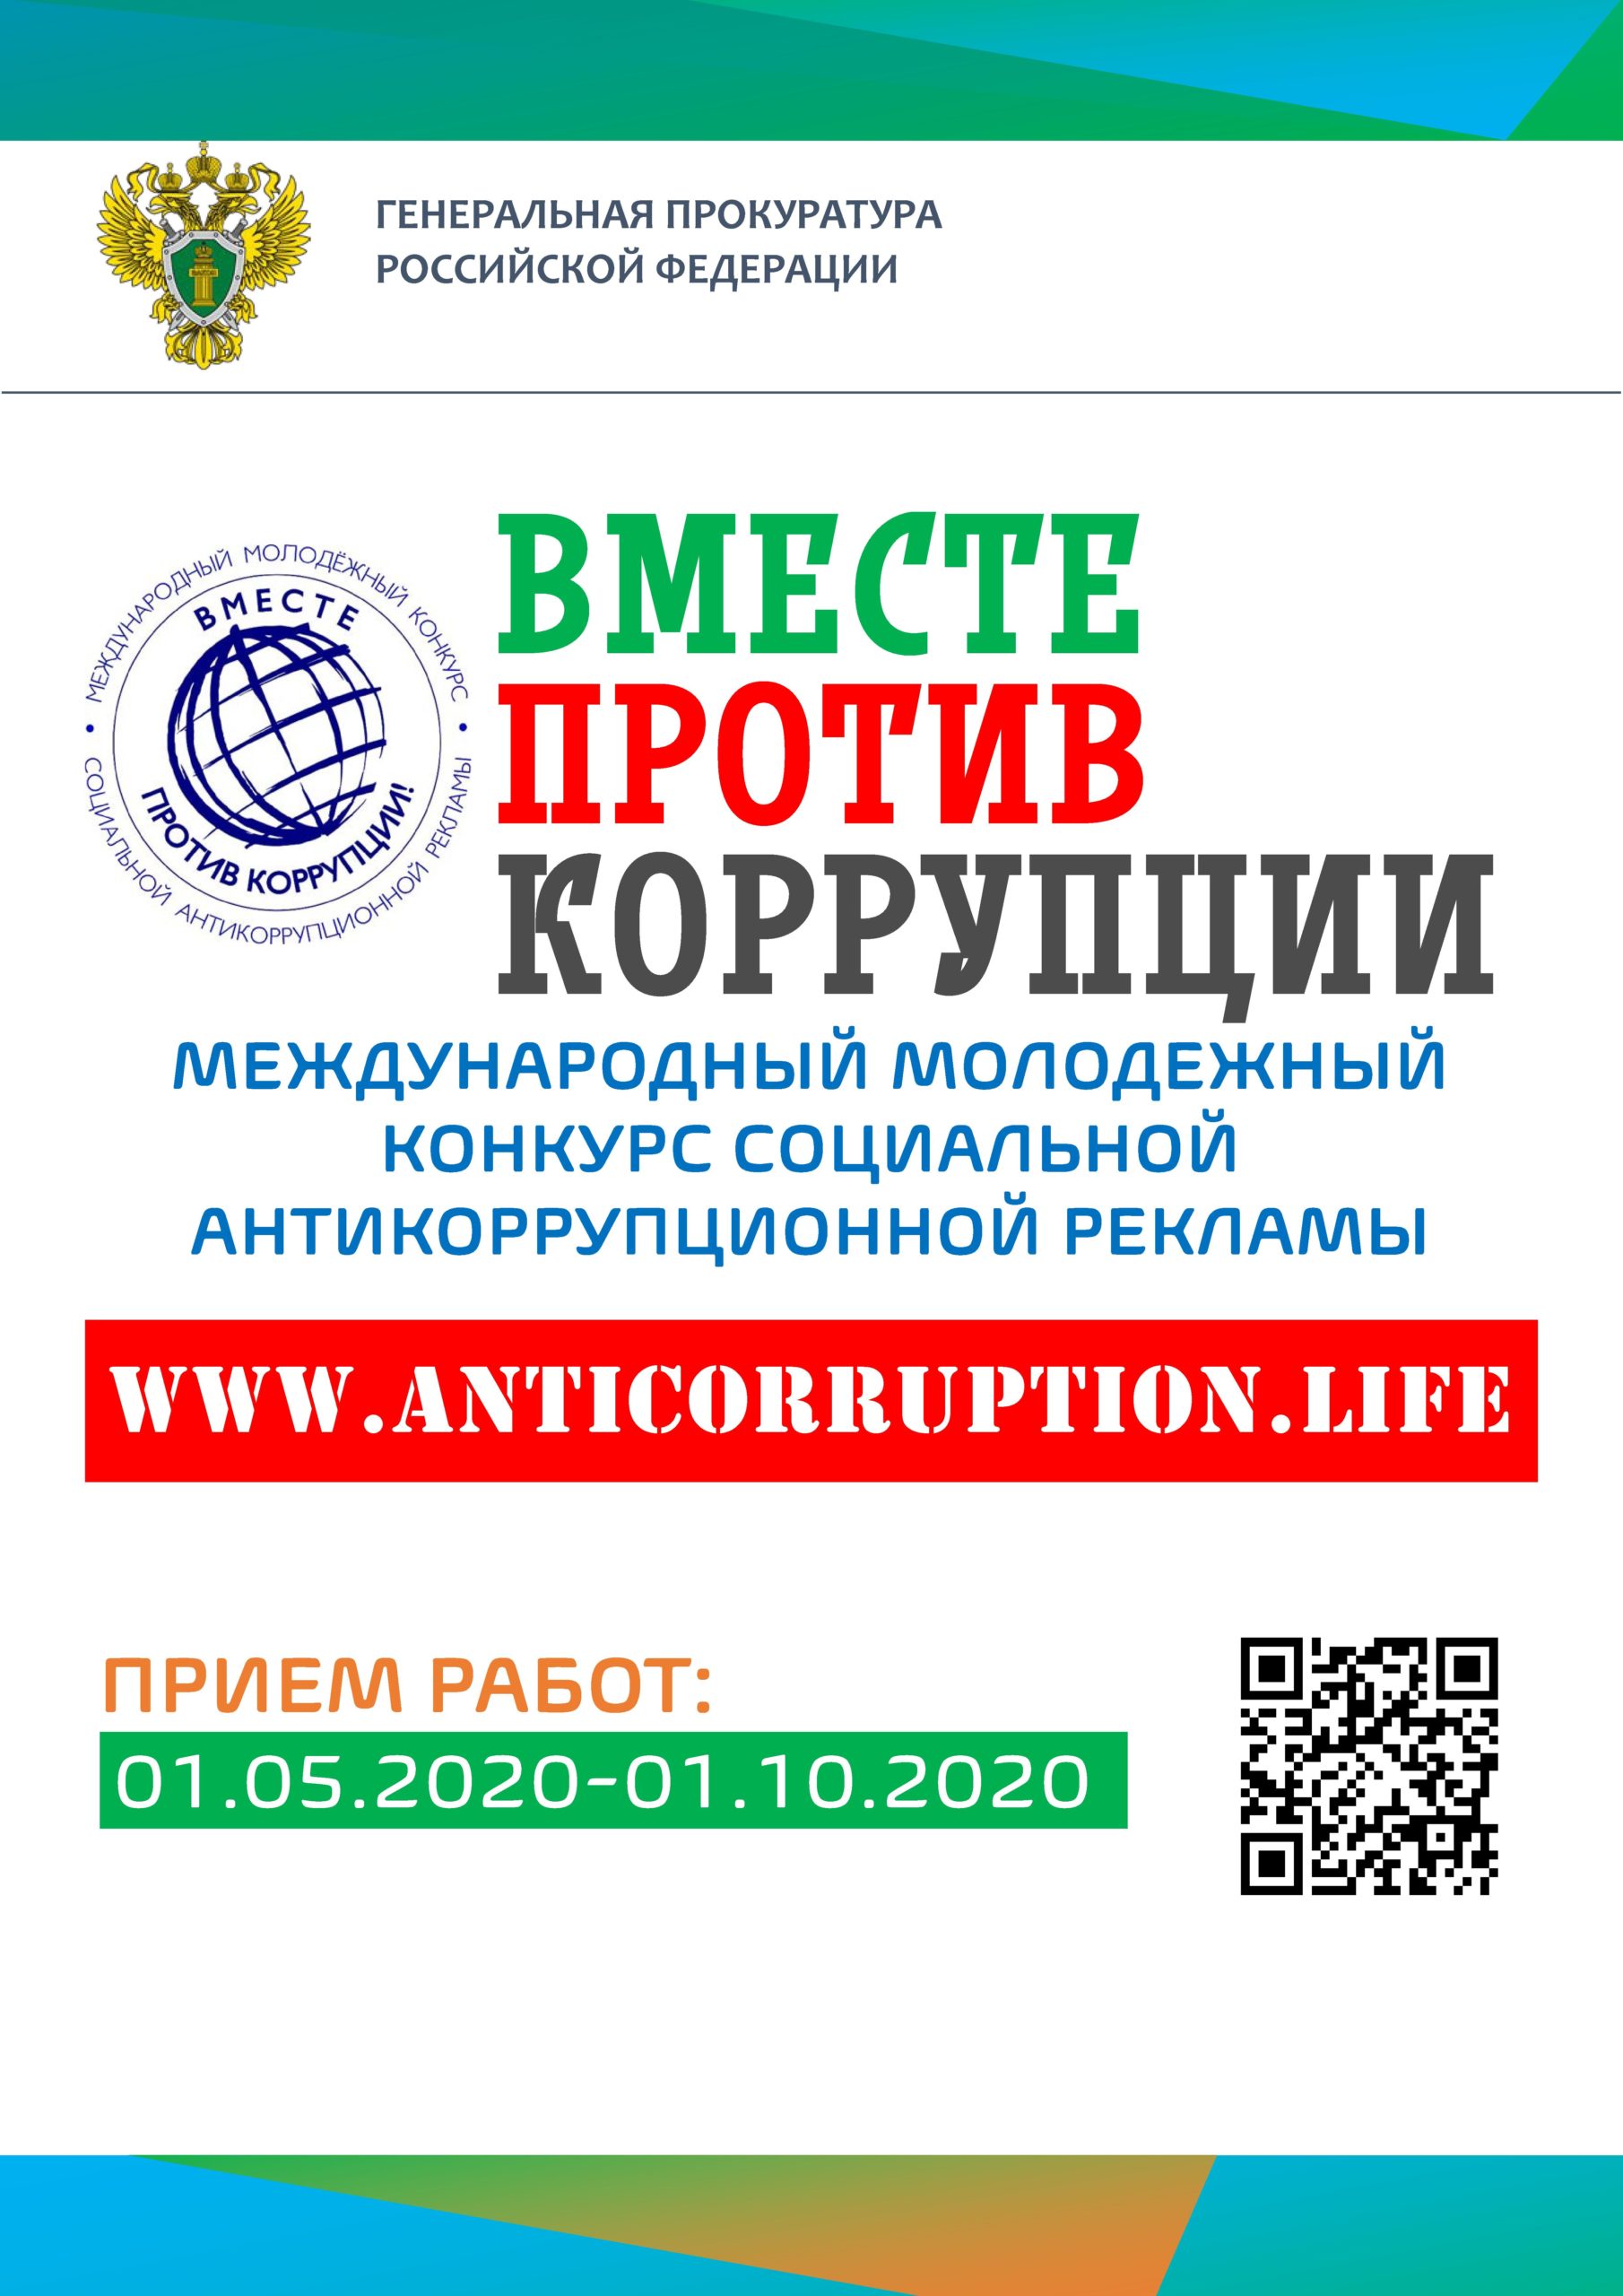 Международный молодежный конкурс социальной рекламы антикоррупционной направленности "Вместе против коррупции"